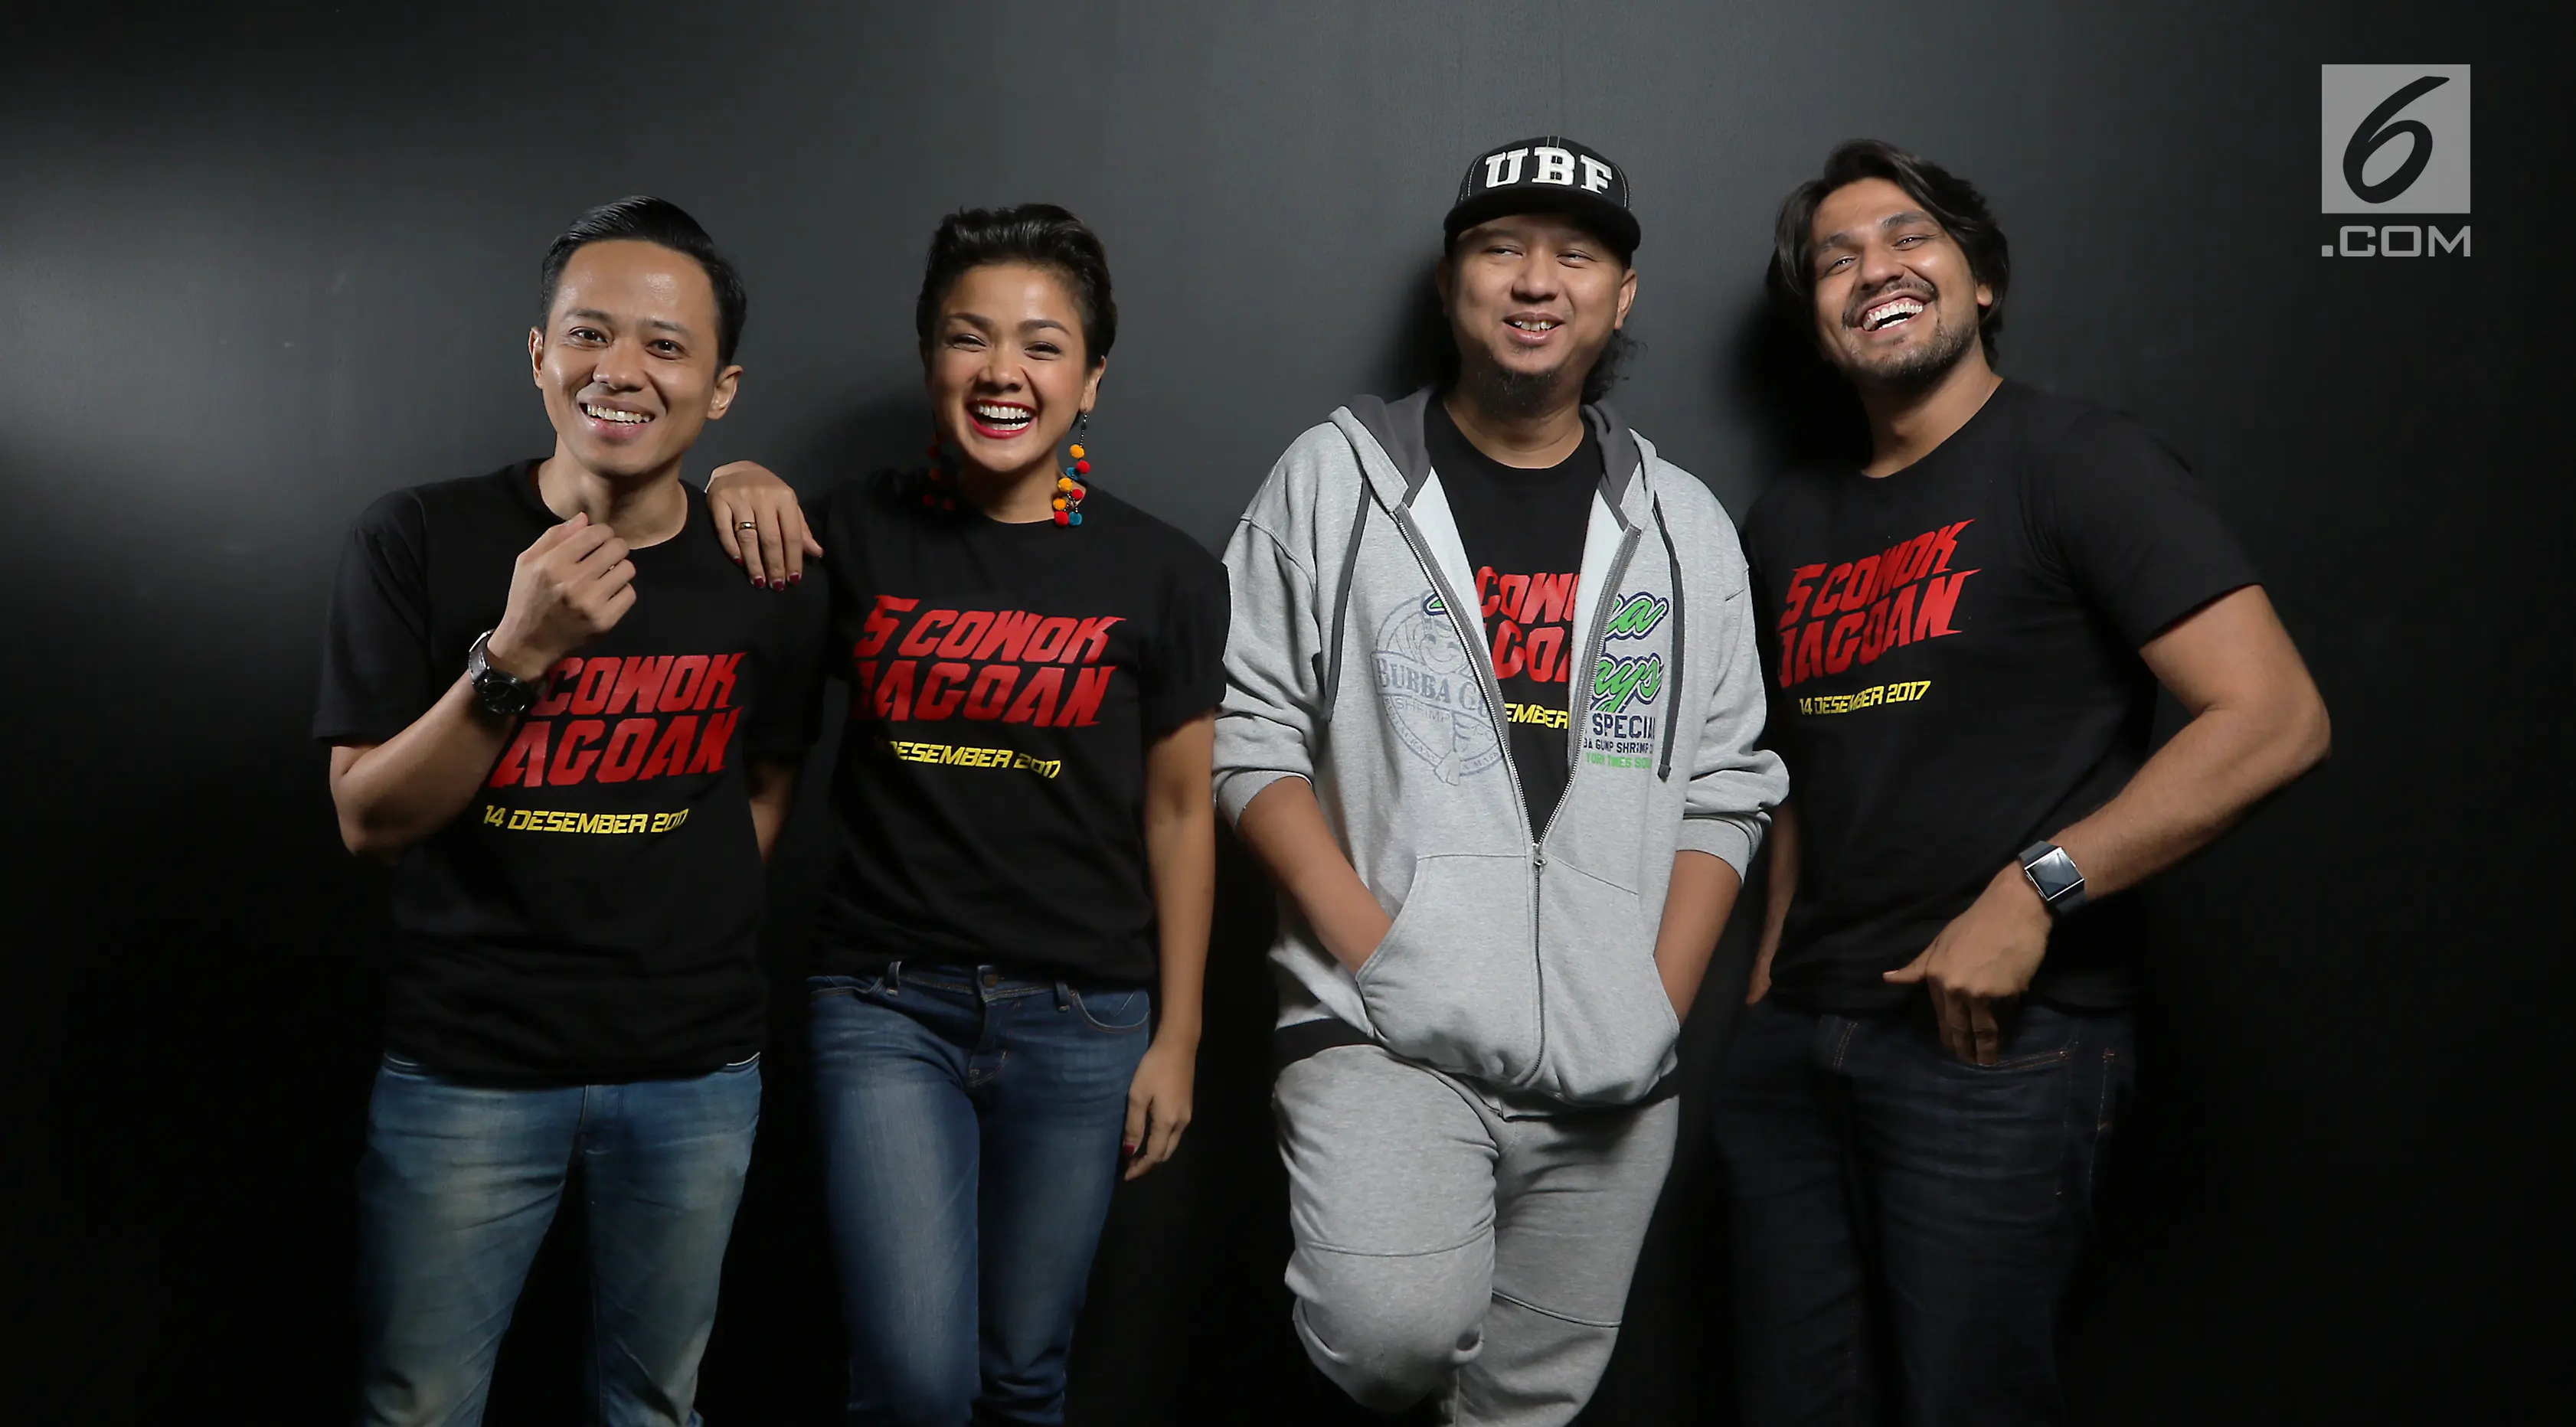 Pemain dan sutradar film 5 Cowok Jagoan, Muhadkly Acho, Nirina Zubir, Anggy Umbara (kedua kanan) dan Cornelio Sunny. (Liputan6.com/Fatkhur Rozaq)